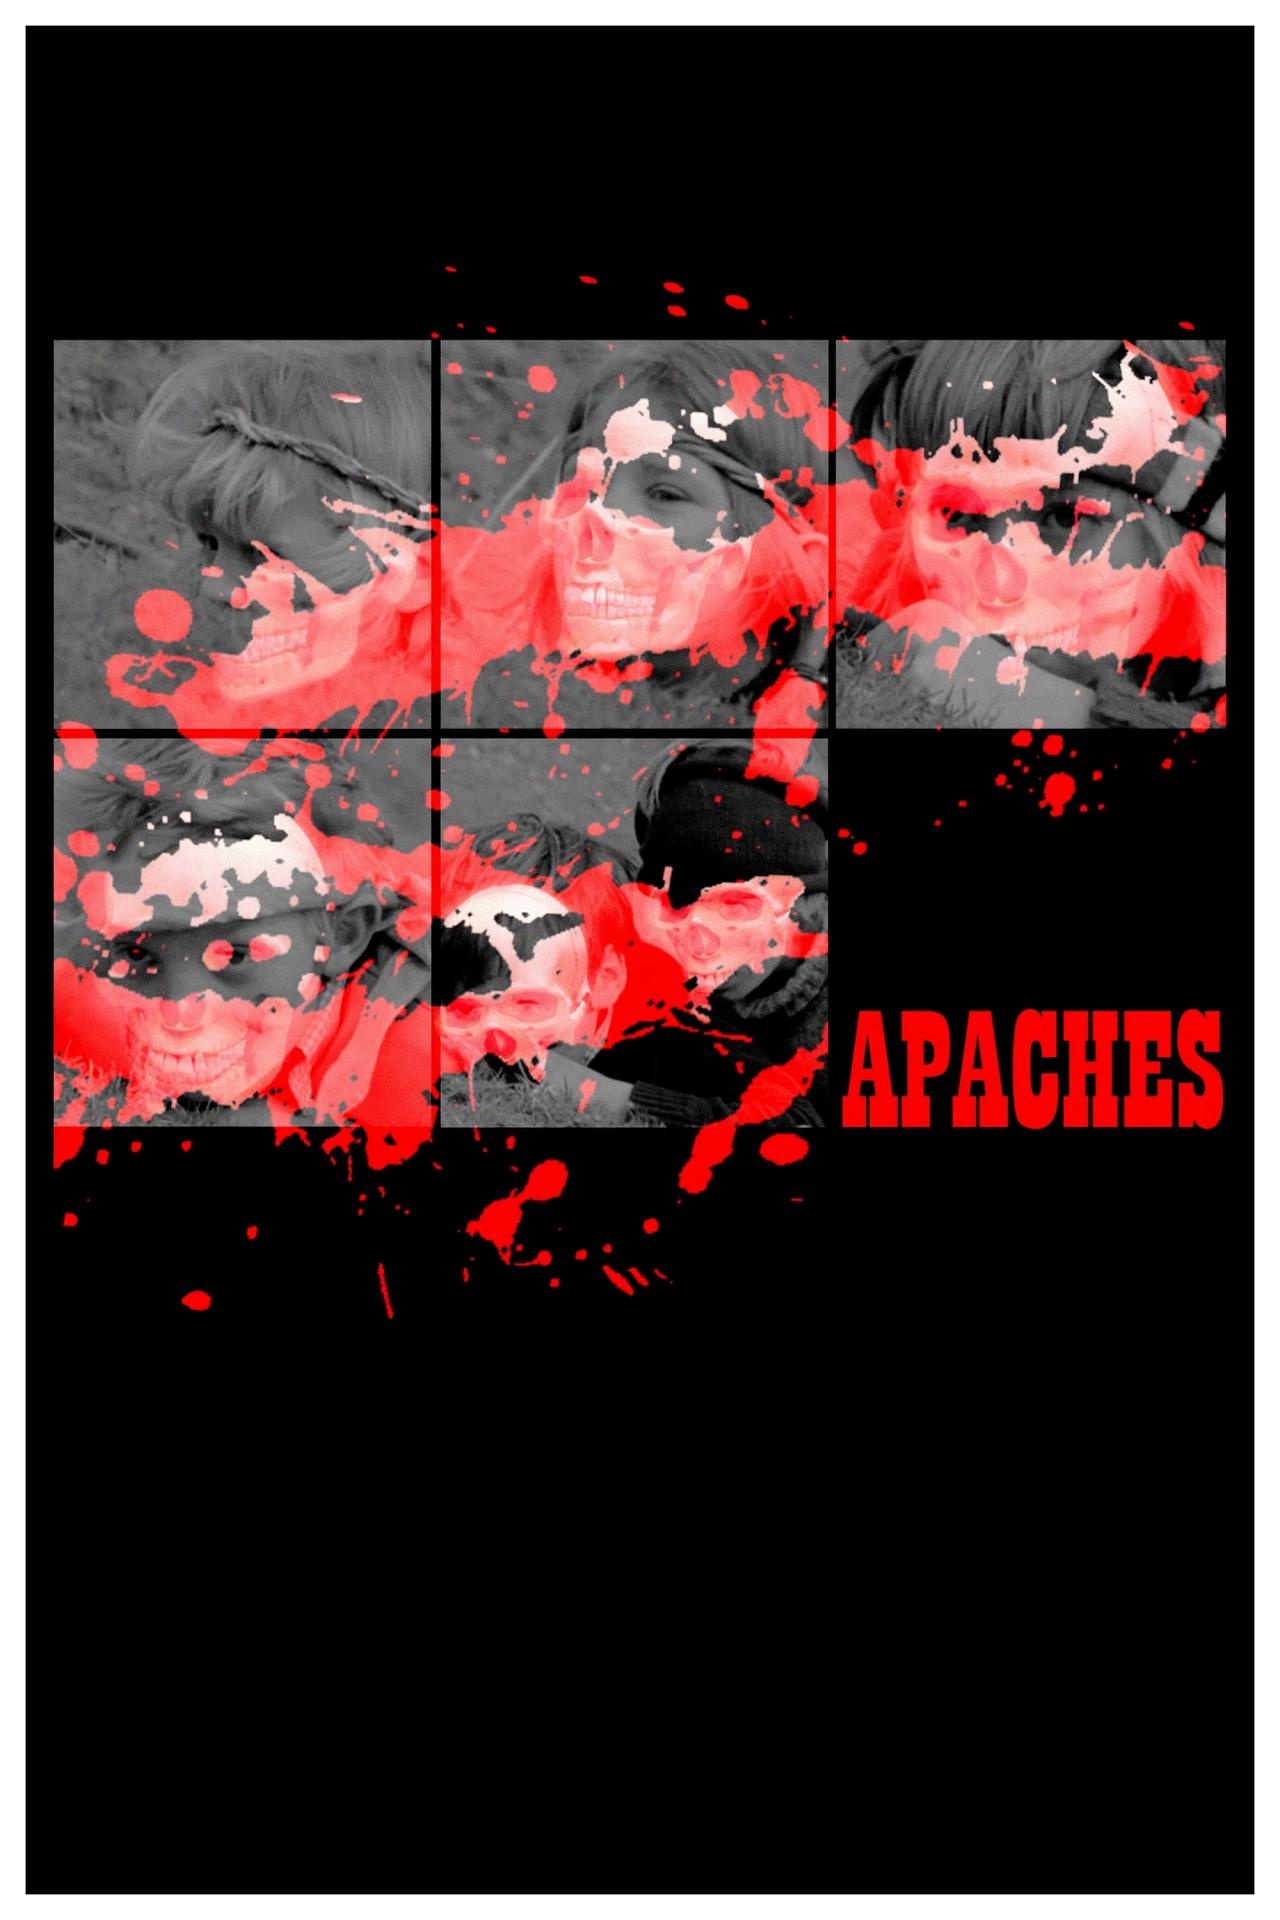 Apaches est-il disponible sur Netflix ou autre ?